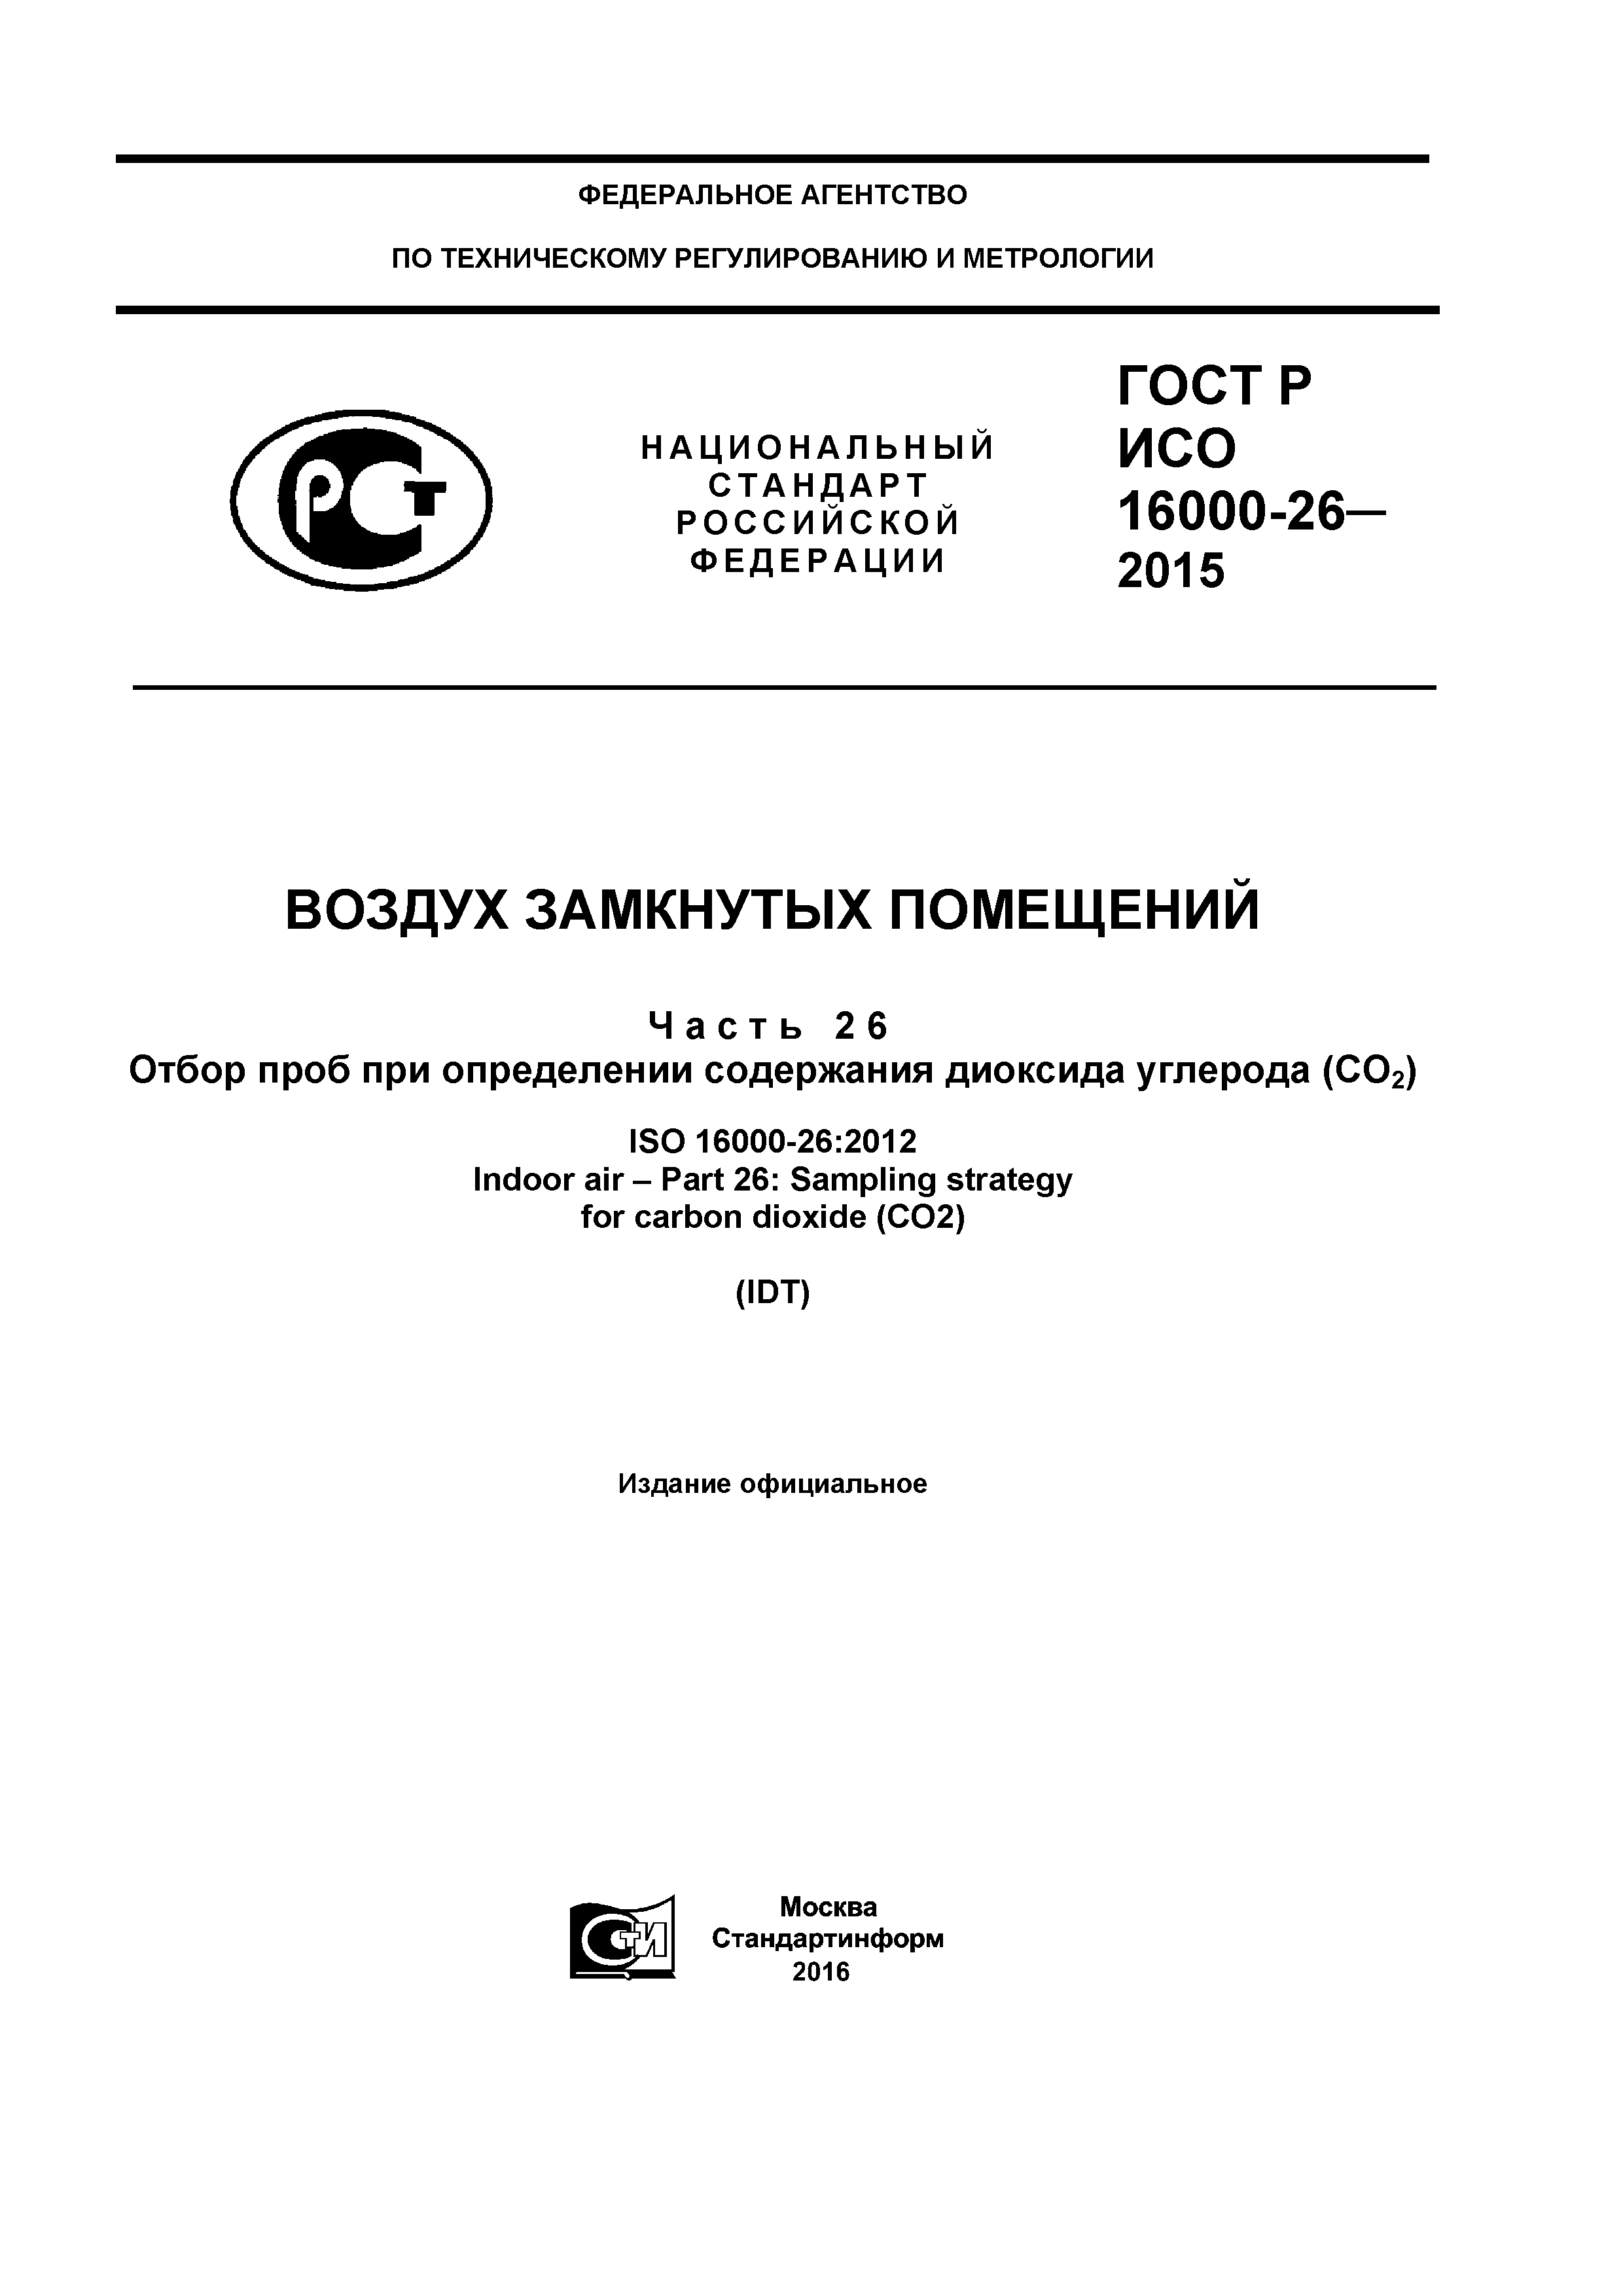 ГОСТ Р ИСО 16000-26-2015